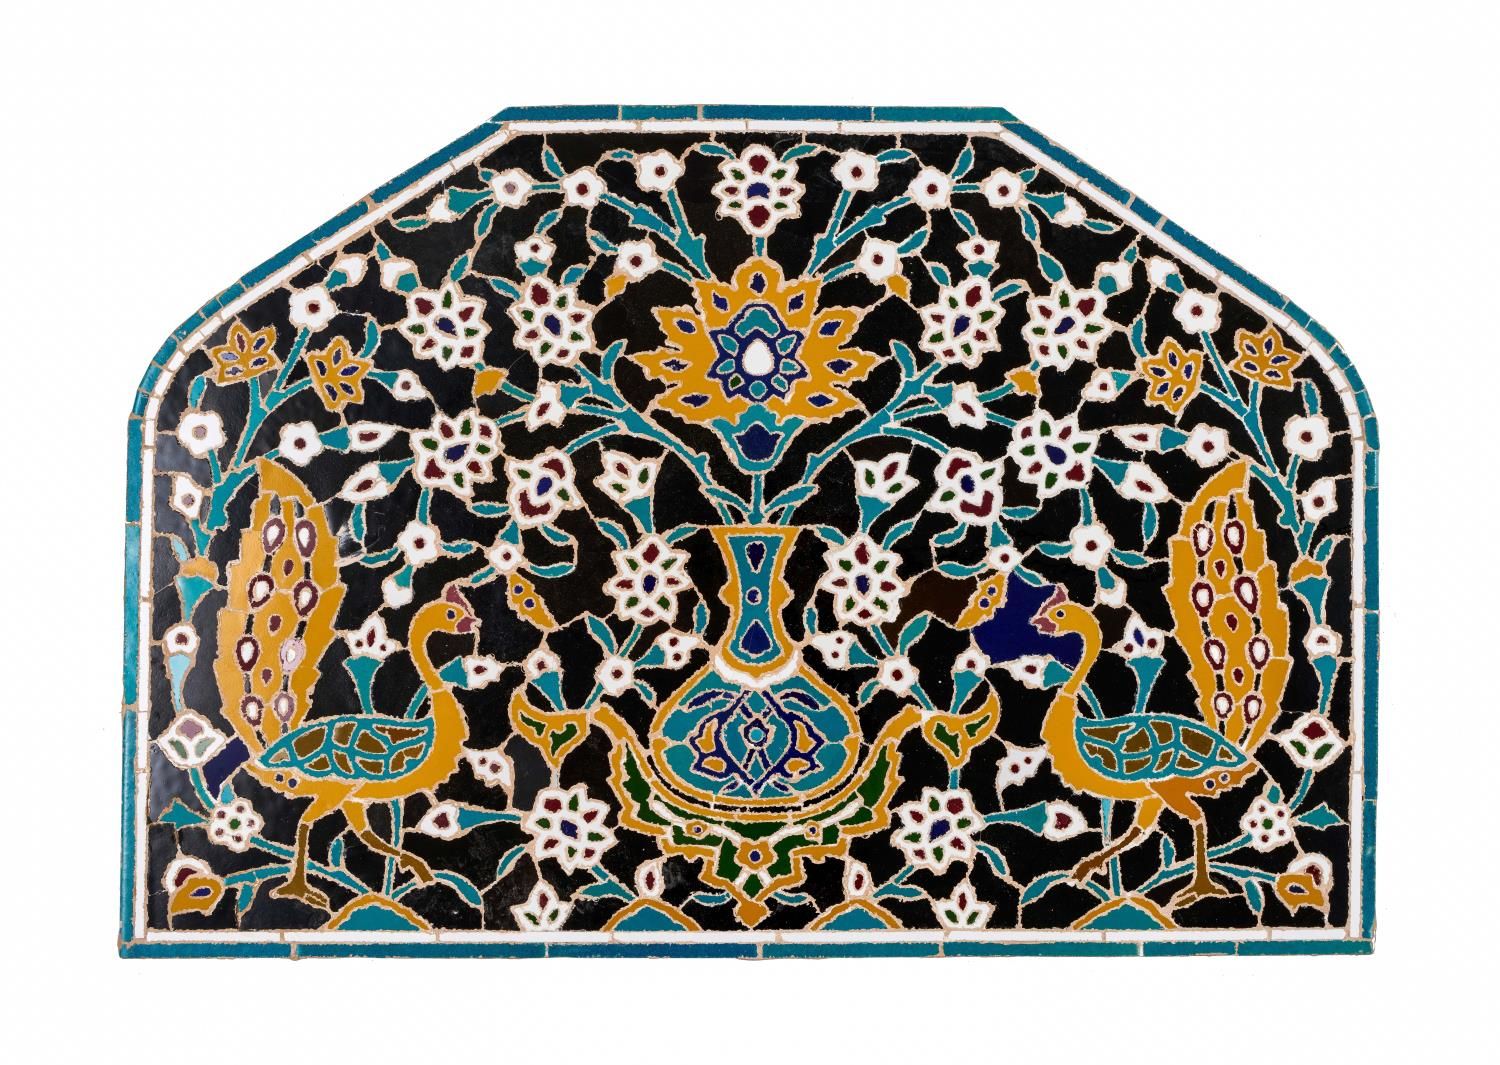 A SAFAVID TILE MOSAIC PANEL IRAN, FIRST THIRD 17TH CENTURY PANNELLO A MOSAICO DI&hellip;